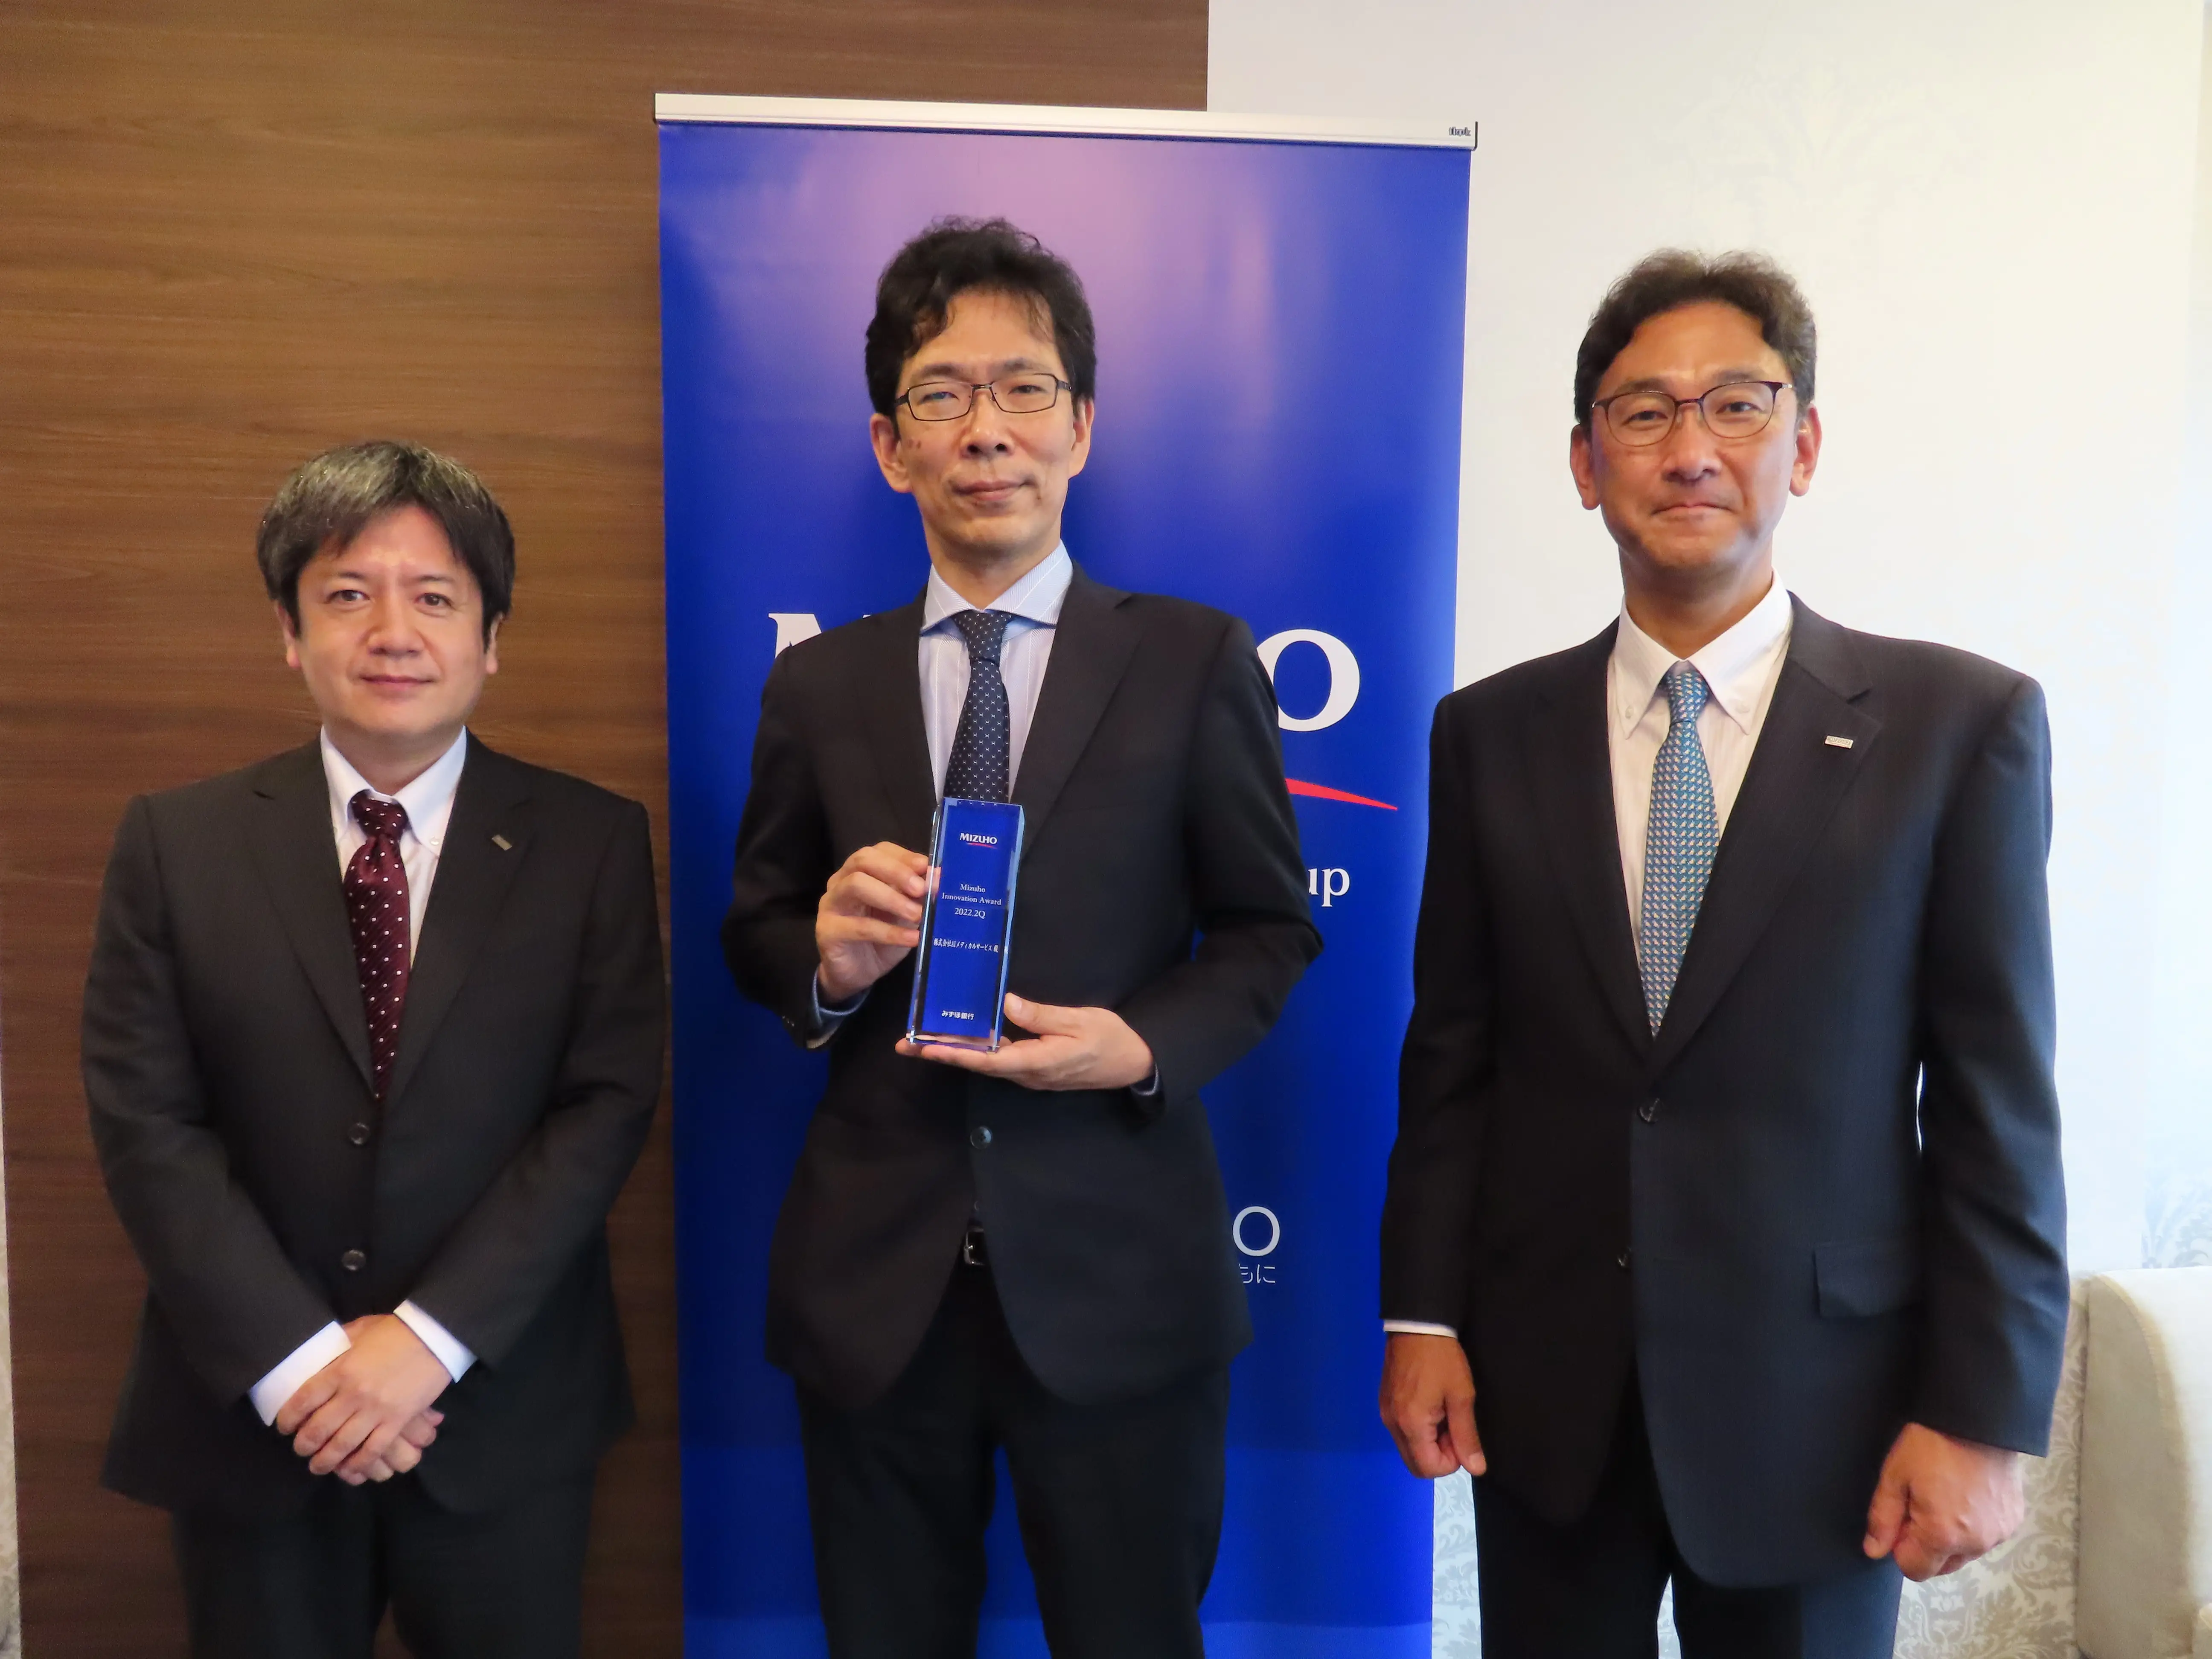 有望なイノベーション企業を表彰する「Mizuho Innovation Award 」を受賞しました